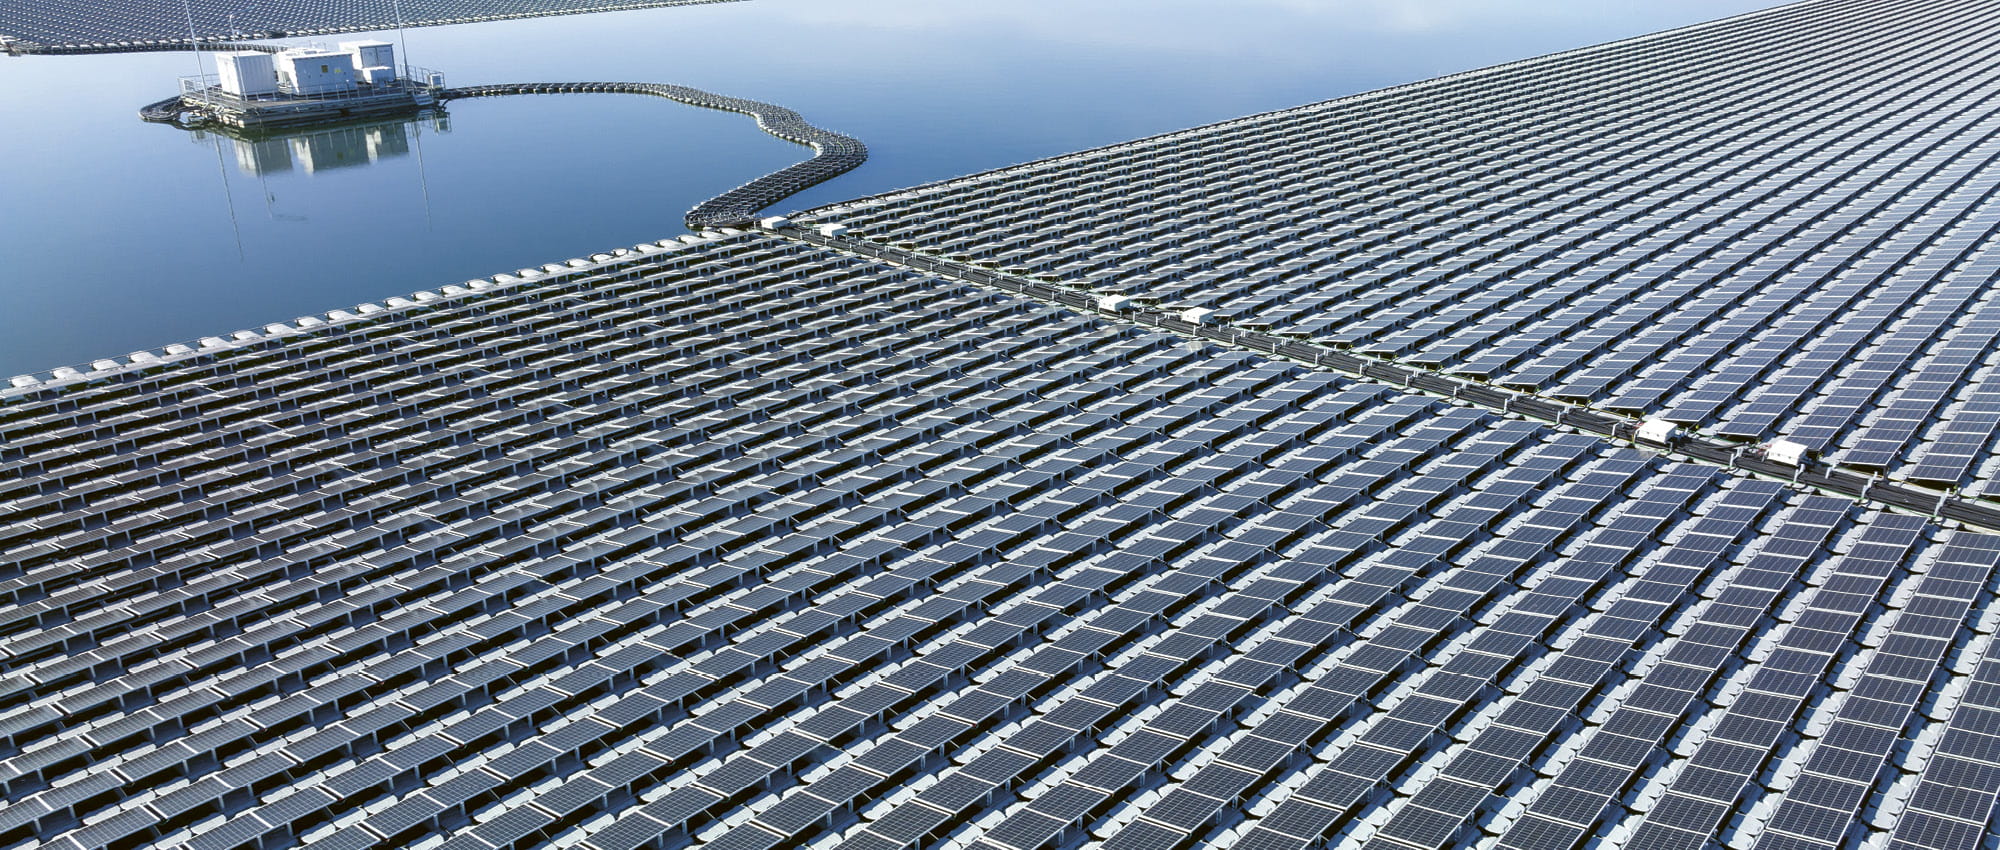 Solar panels on water. Copyright: shutterstock/Avigator Fortuner